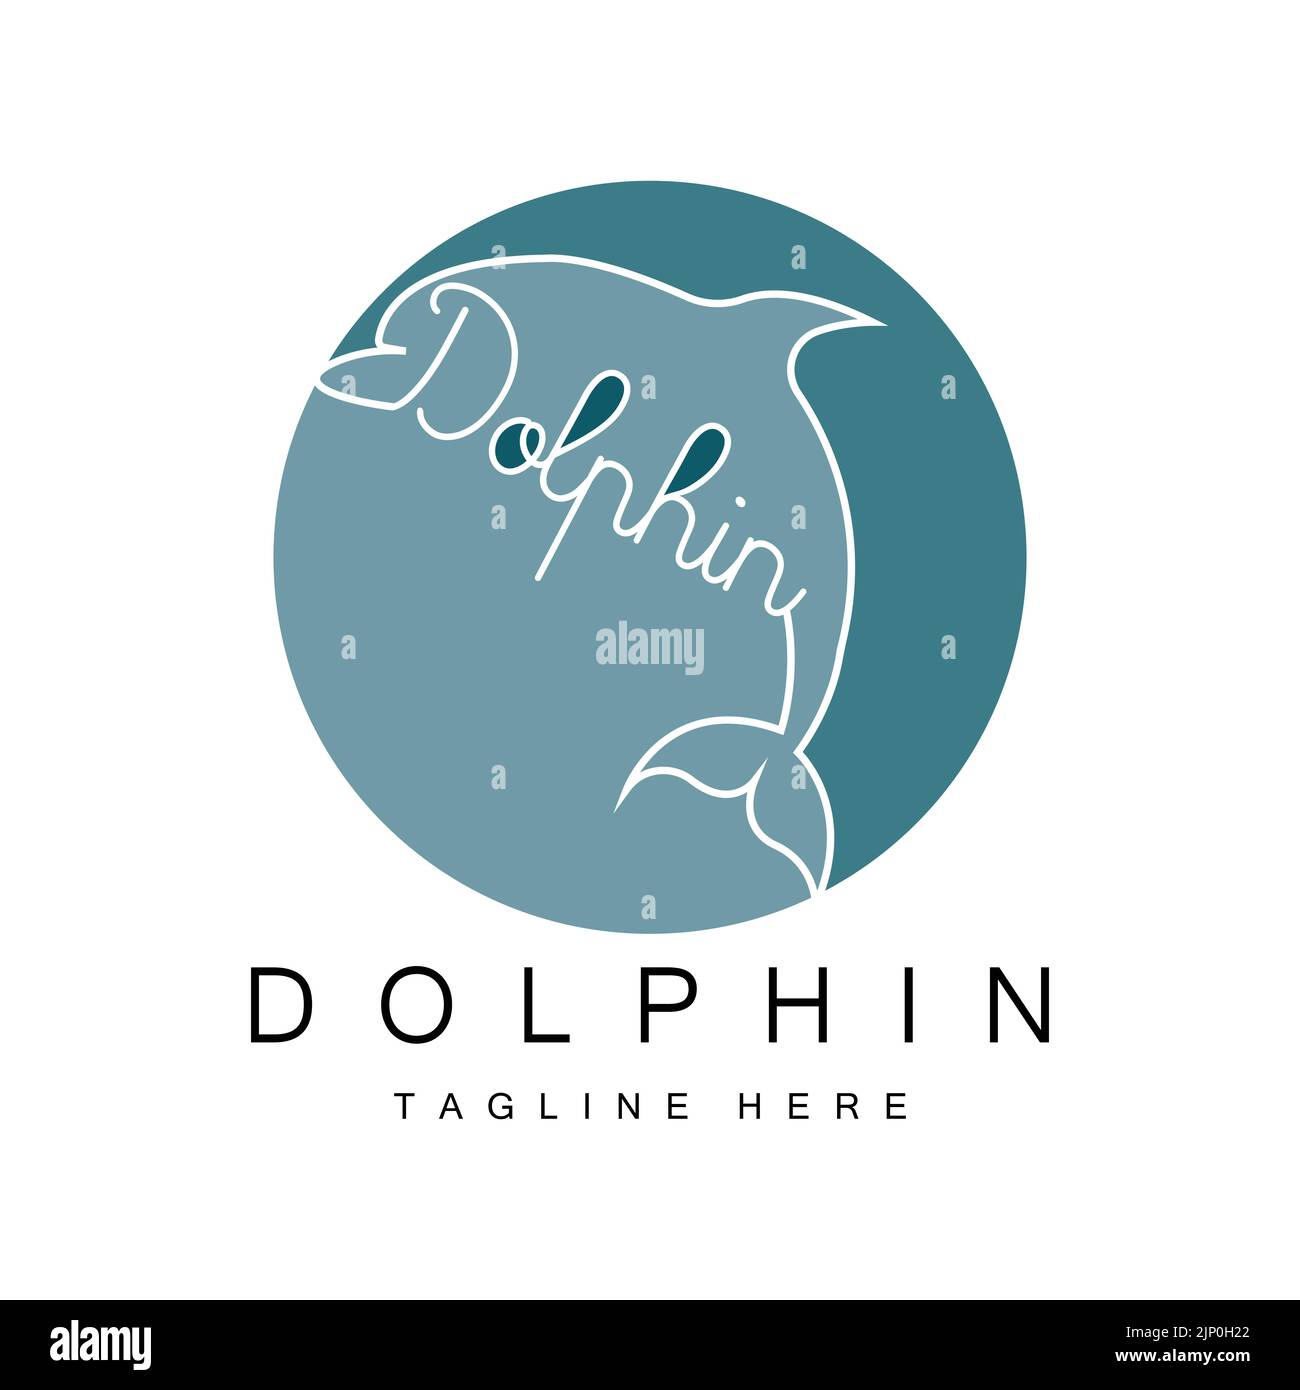 Dolphin Logo Vektor Icon Design, Meerestiere Fischarten Säugetiere, Liebe zu fliegen und zu springen Stock Vektor